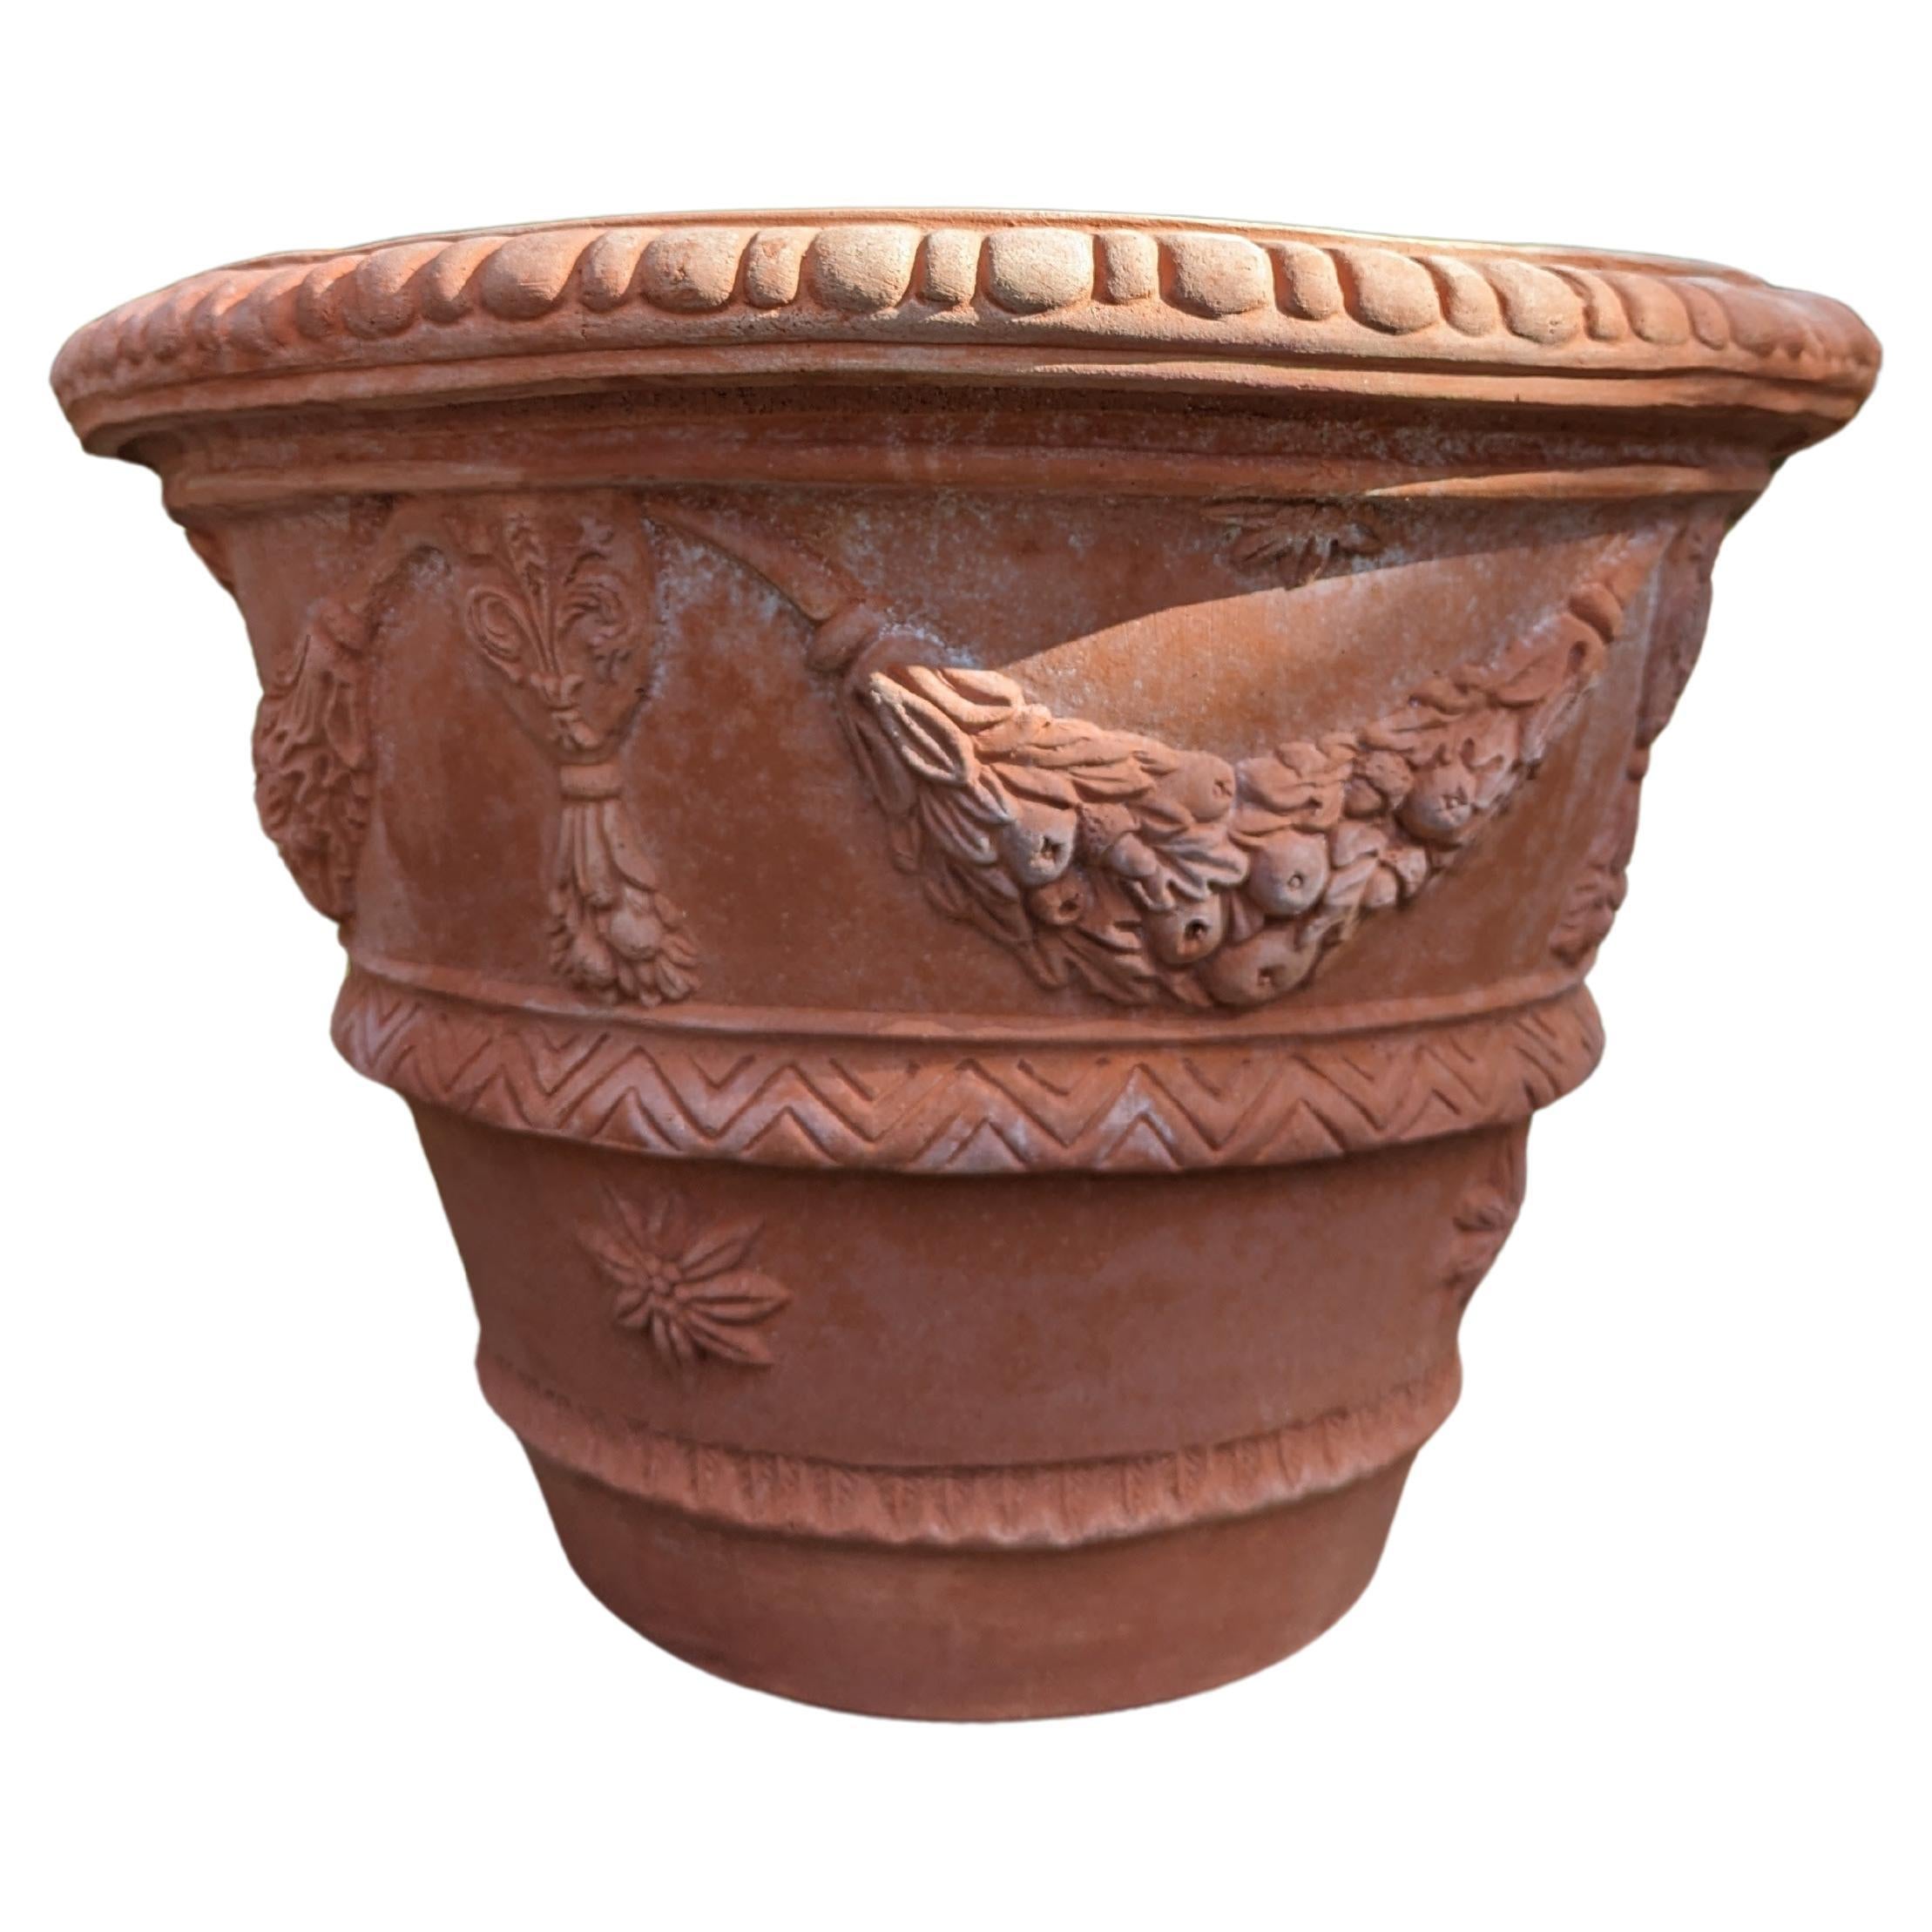 Italian "Scolpito" Impruneta Terracotta Pot (60cm)